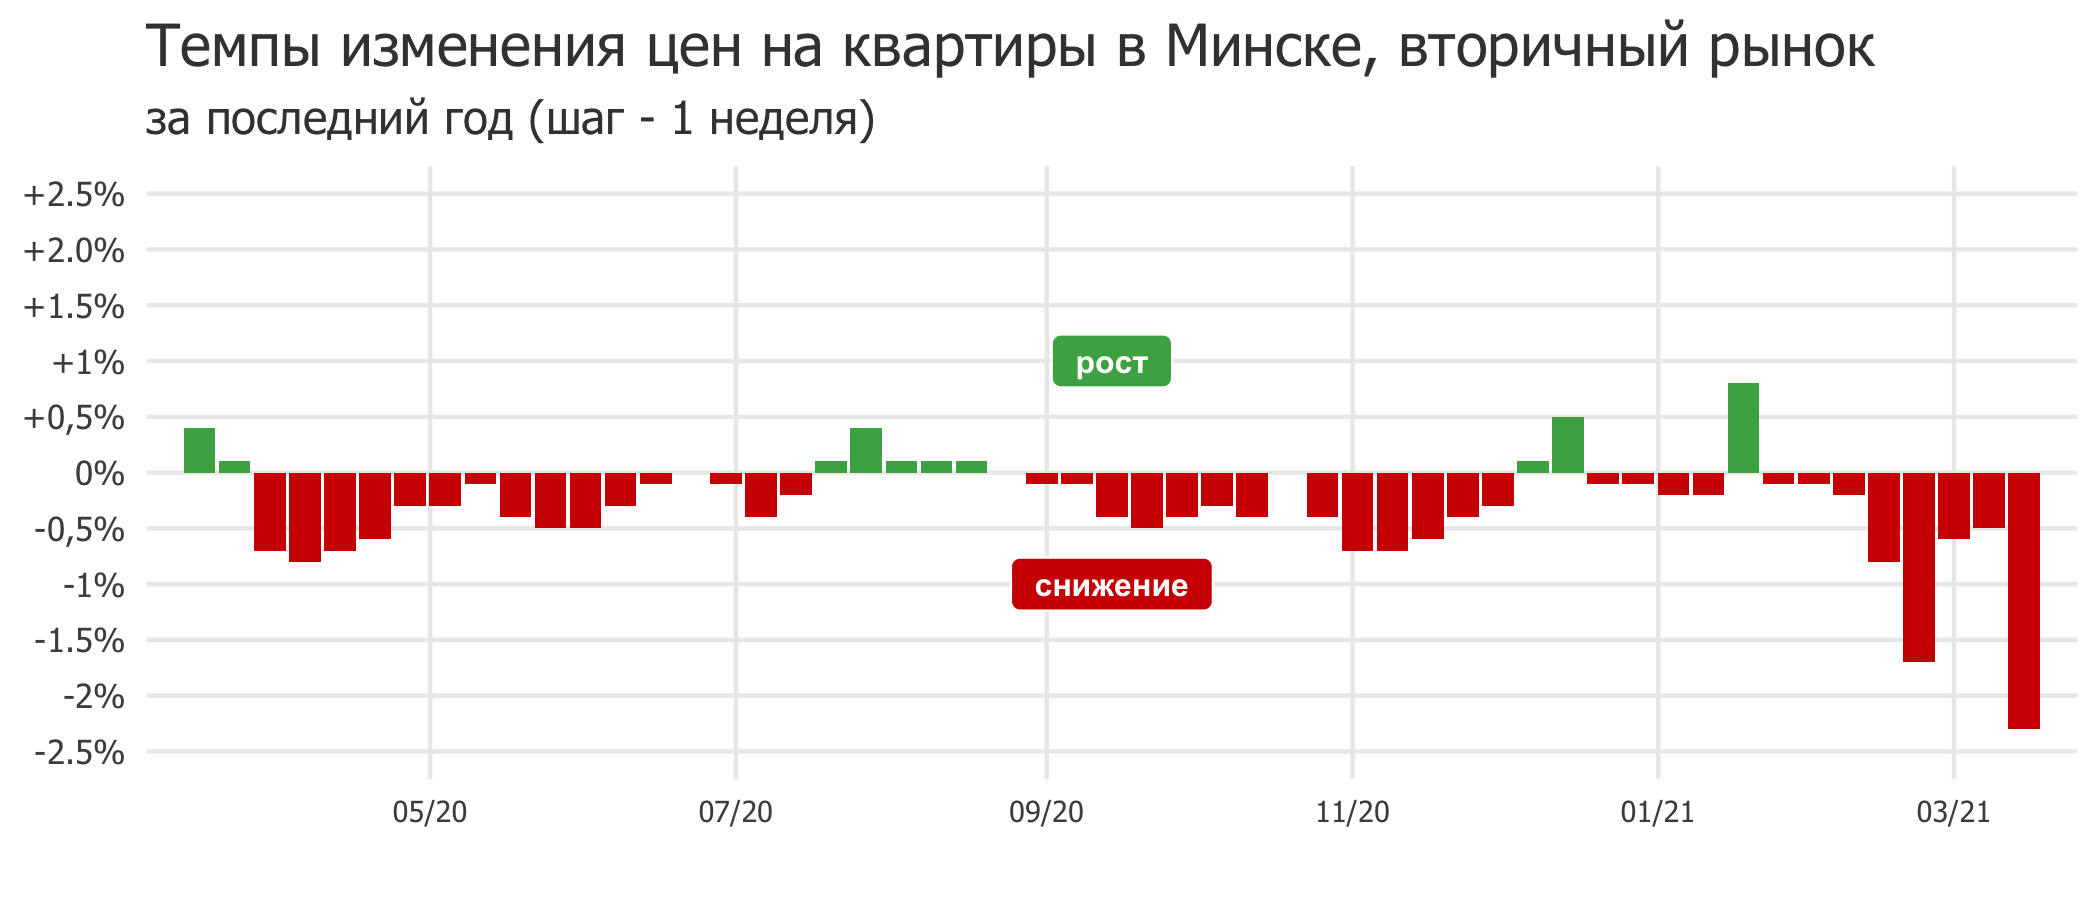 Мониторинг цен предложения квартир в Минске за 8-15 марта 2021 года